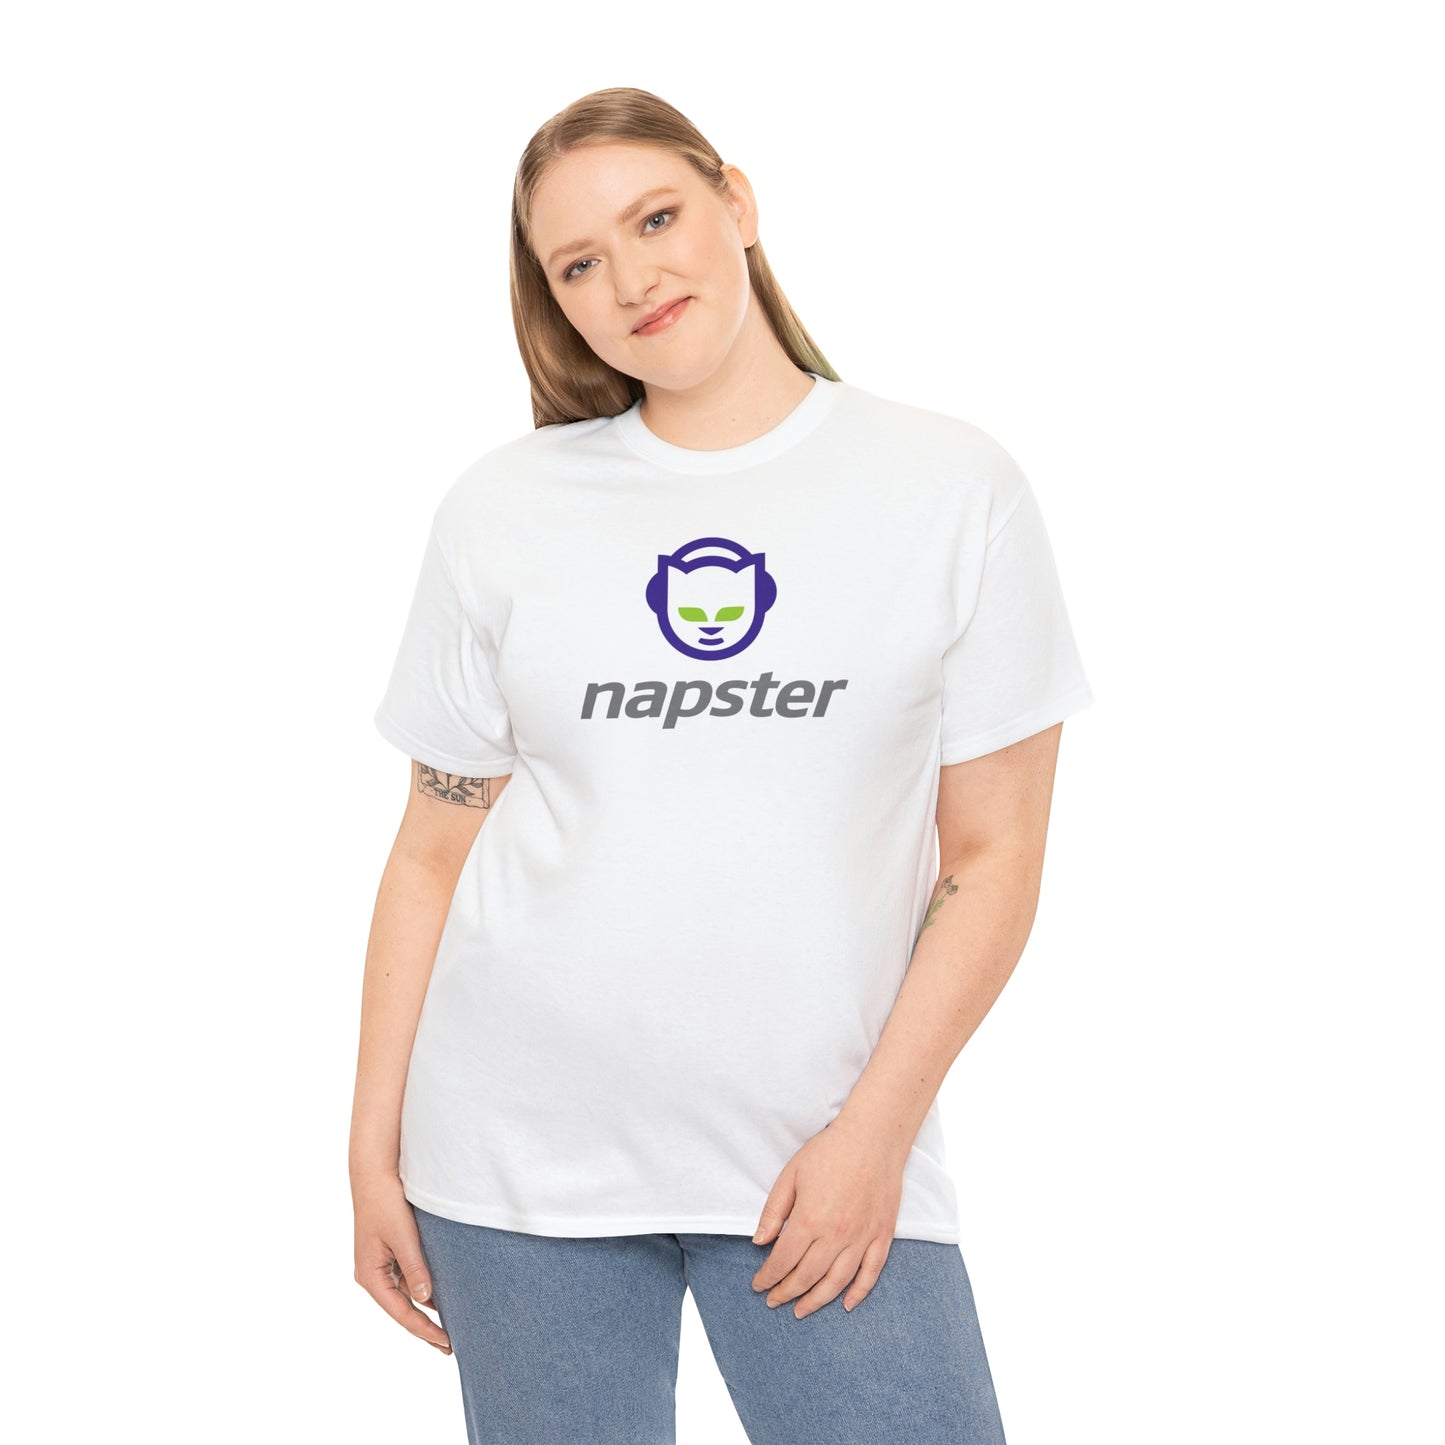 Napster T-Shirt